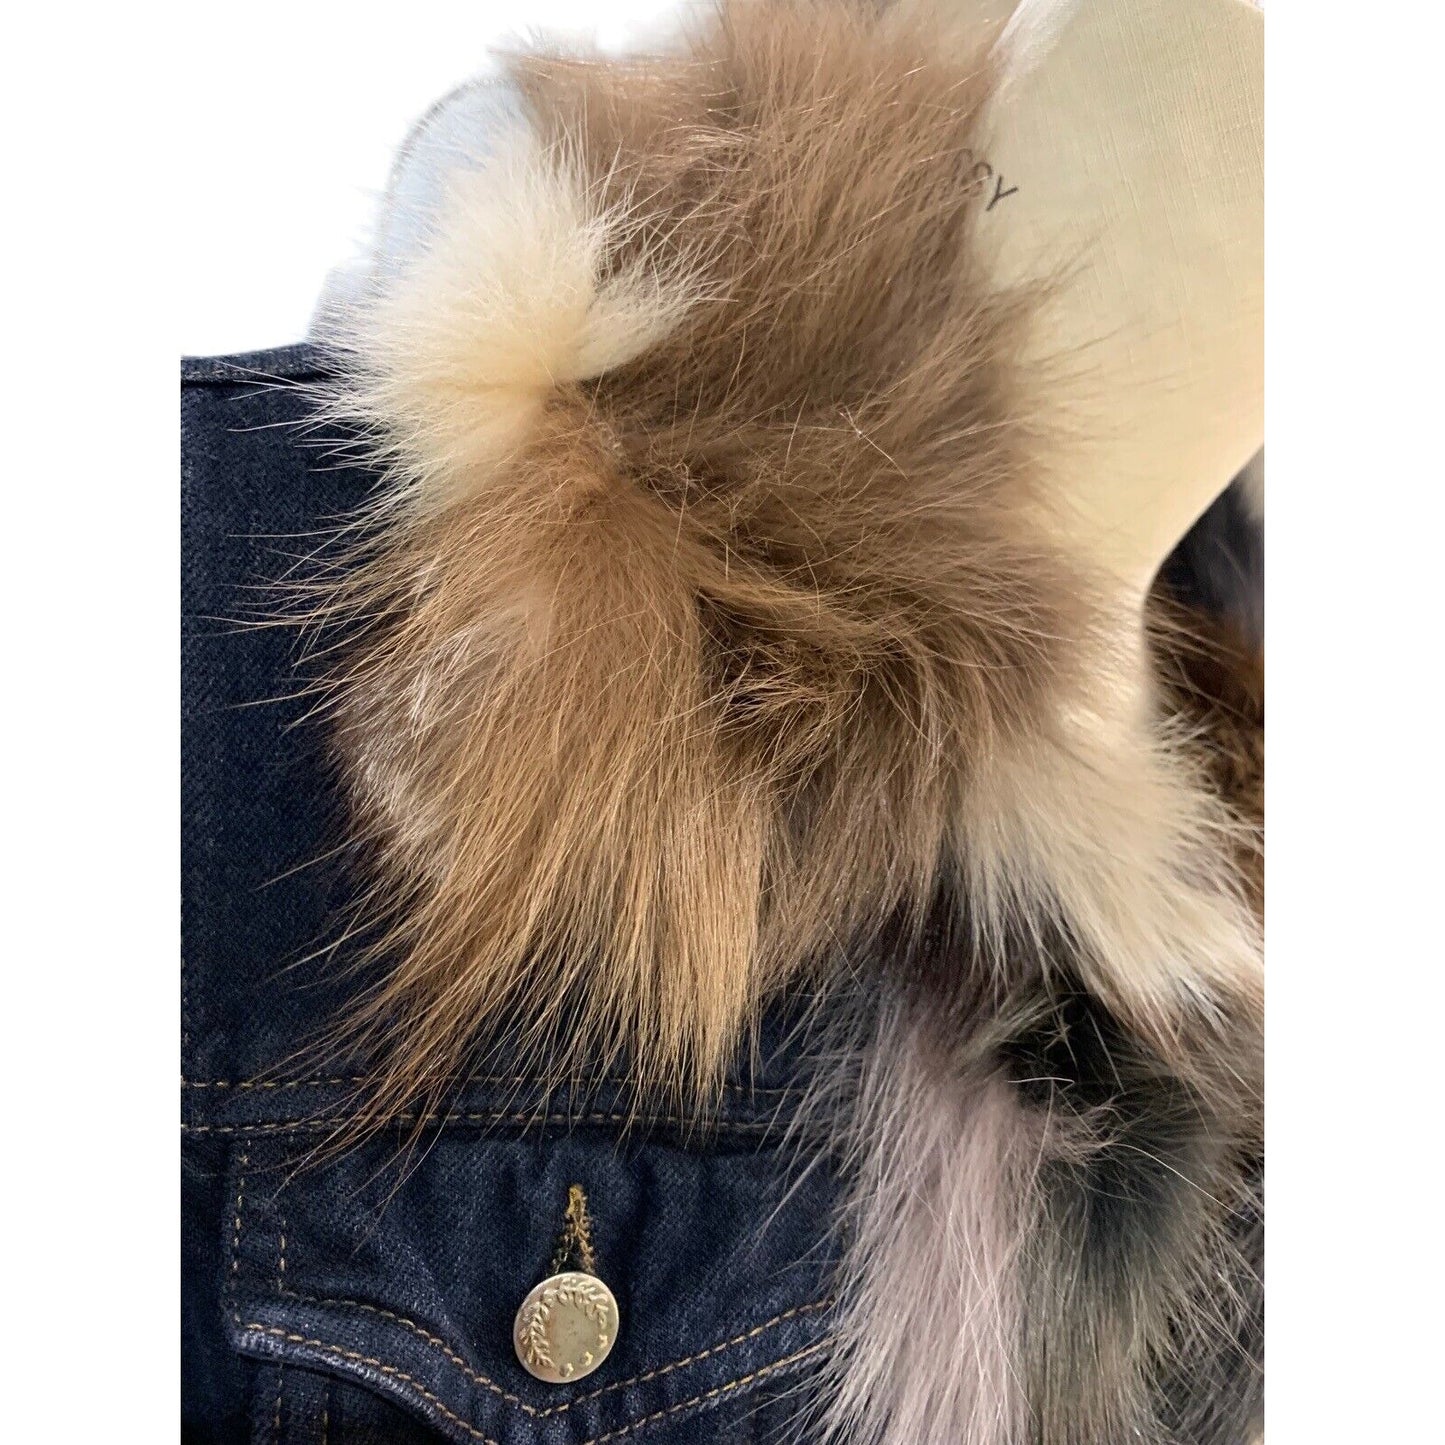 KRYOS Women's Denim And Fur Slim Fitting Jacket